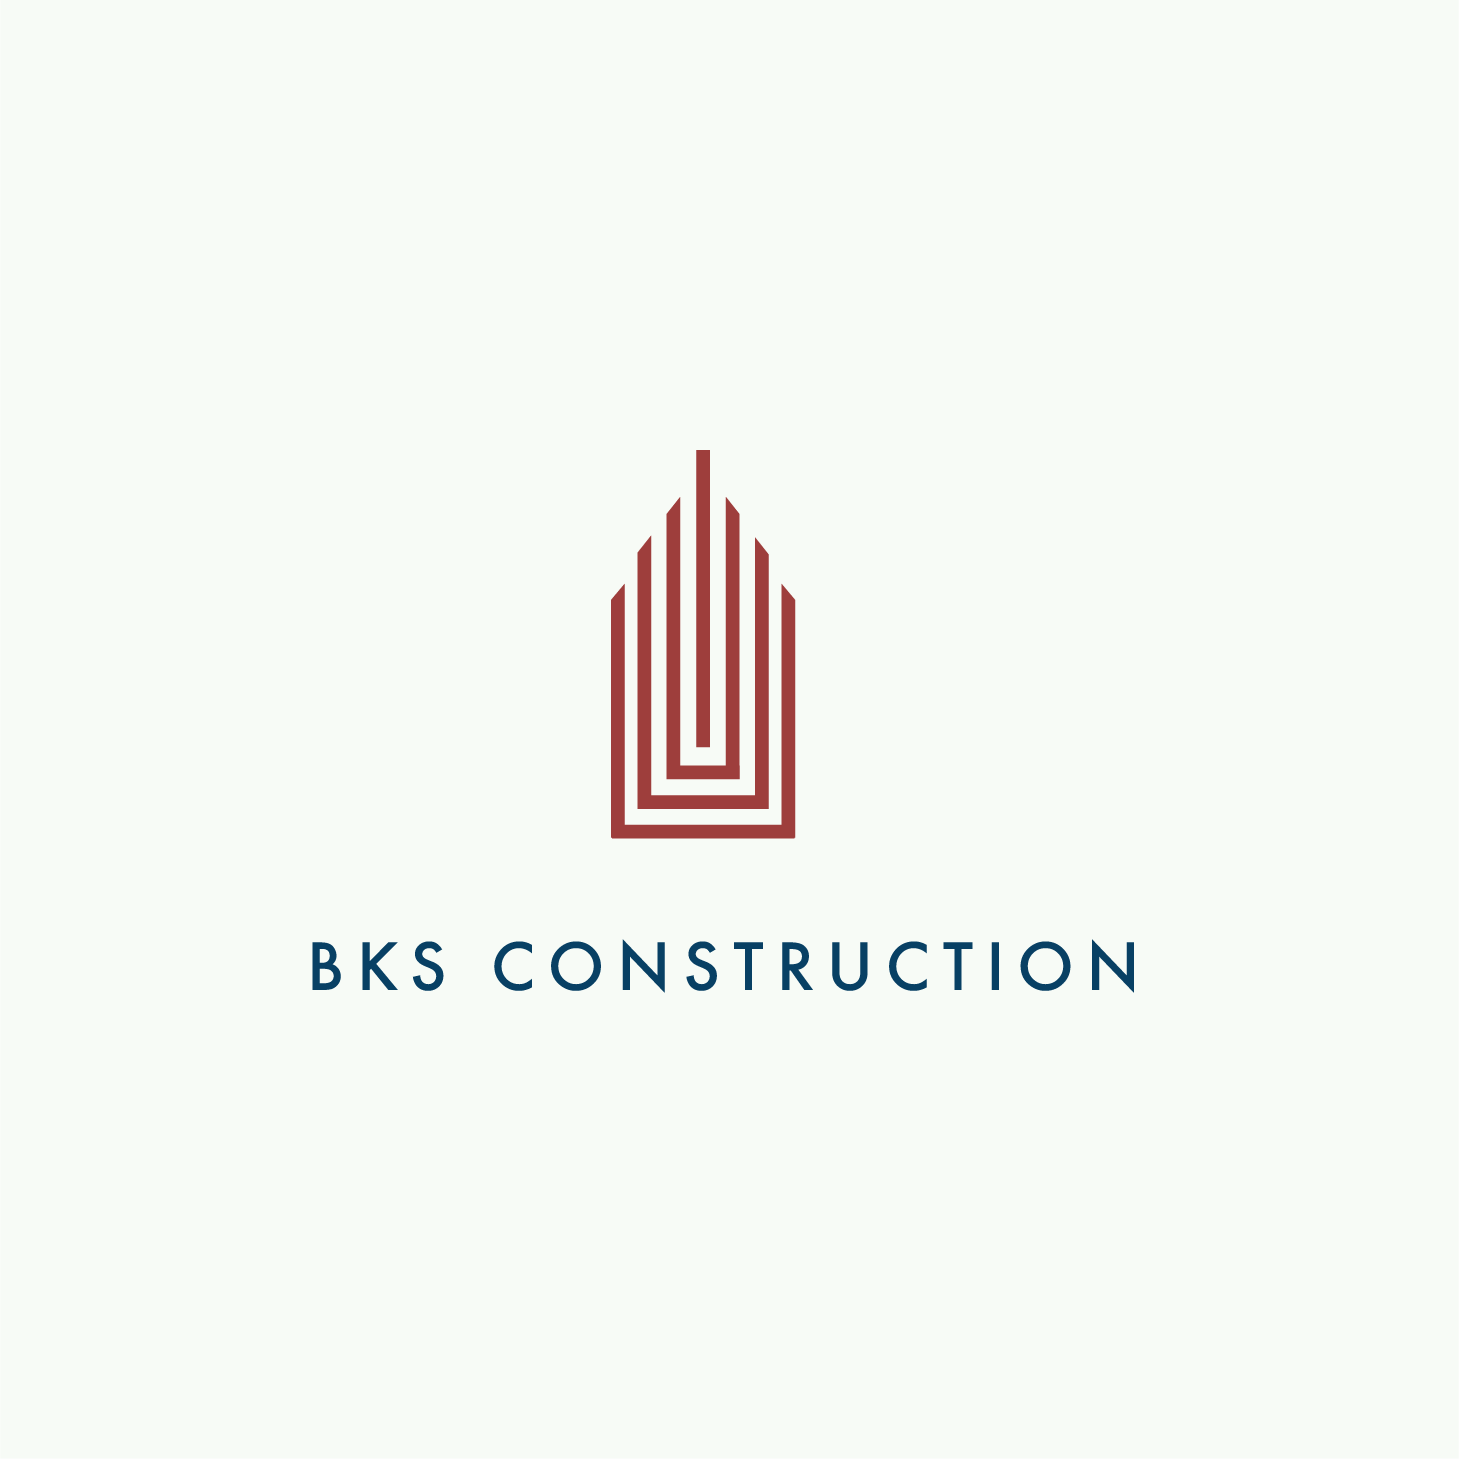 BKS Construction